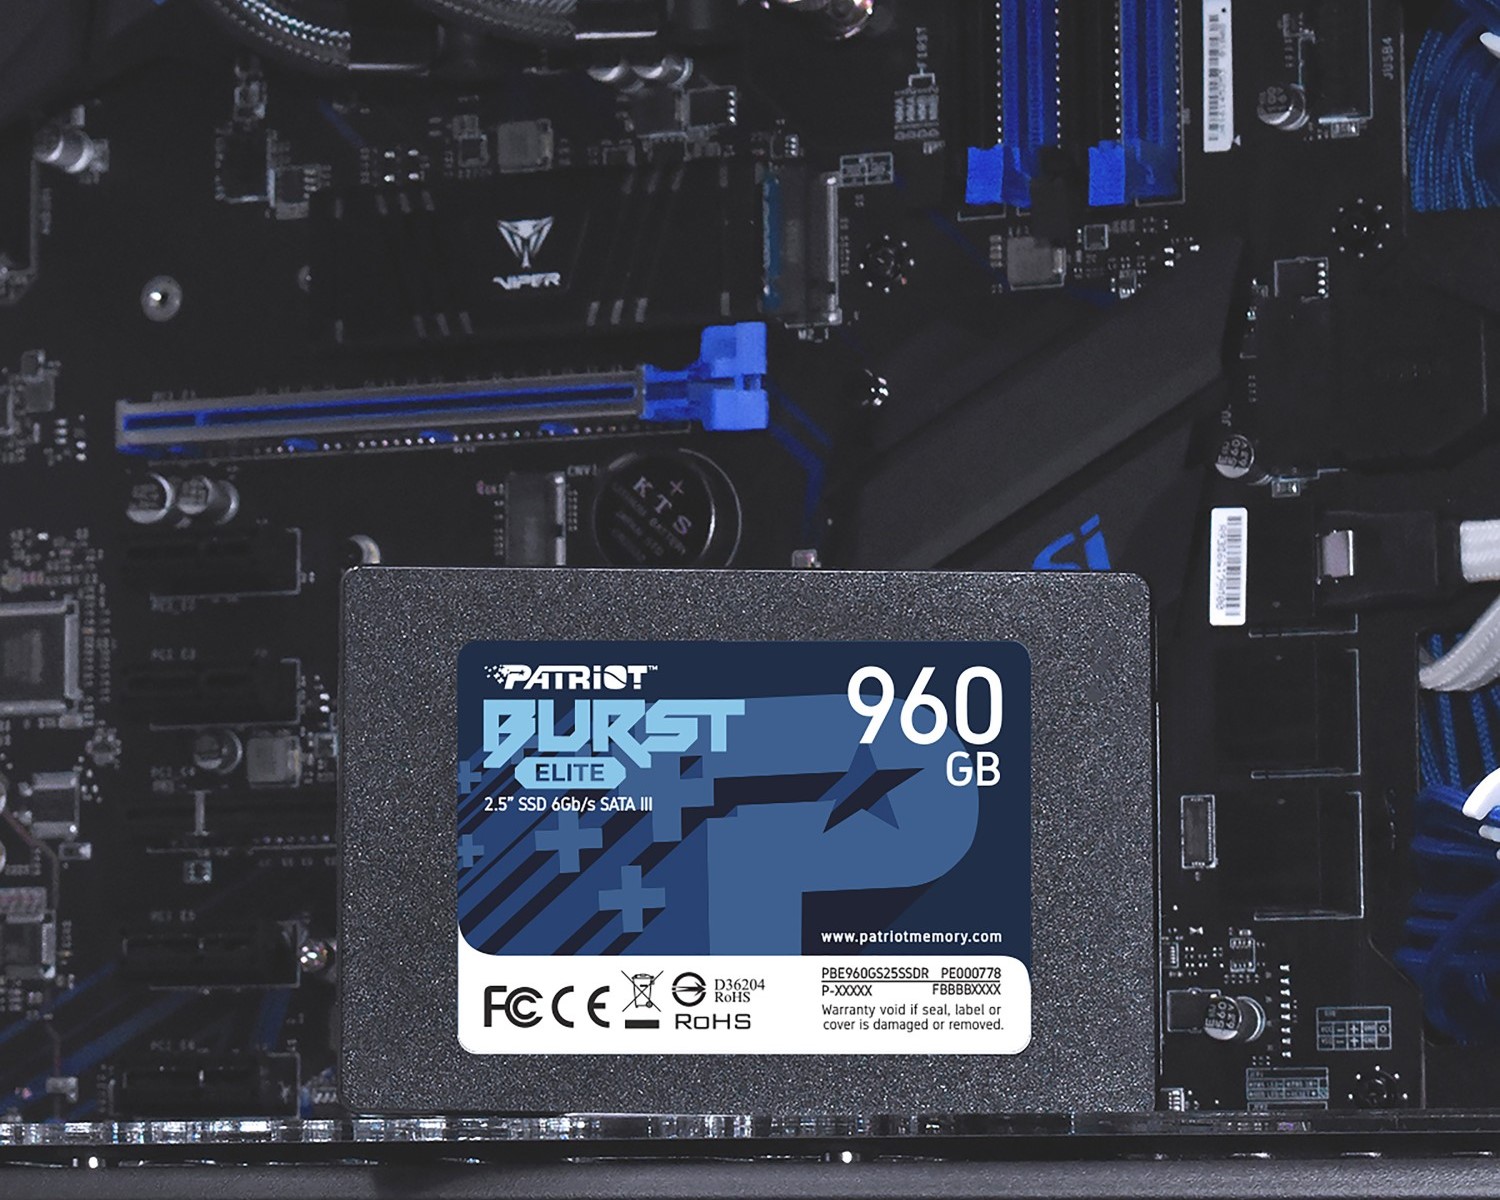 Interný SSD disk Patriot Burst Elite s kapacitou 960 GB ponúka vysoké prenosové rýchlosti, aby zabránil spomaľovaniu výkonu zo strany úložiska.